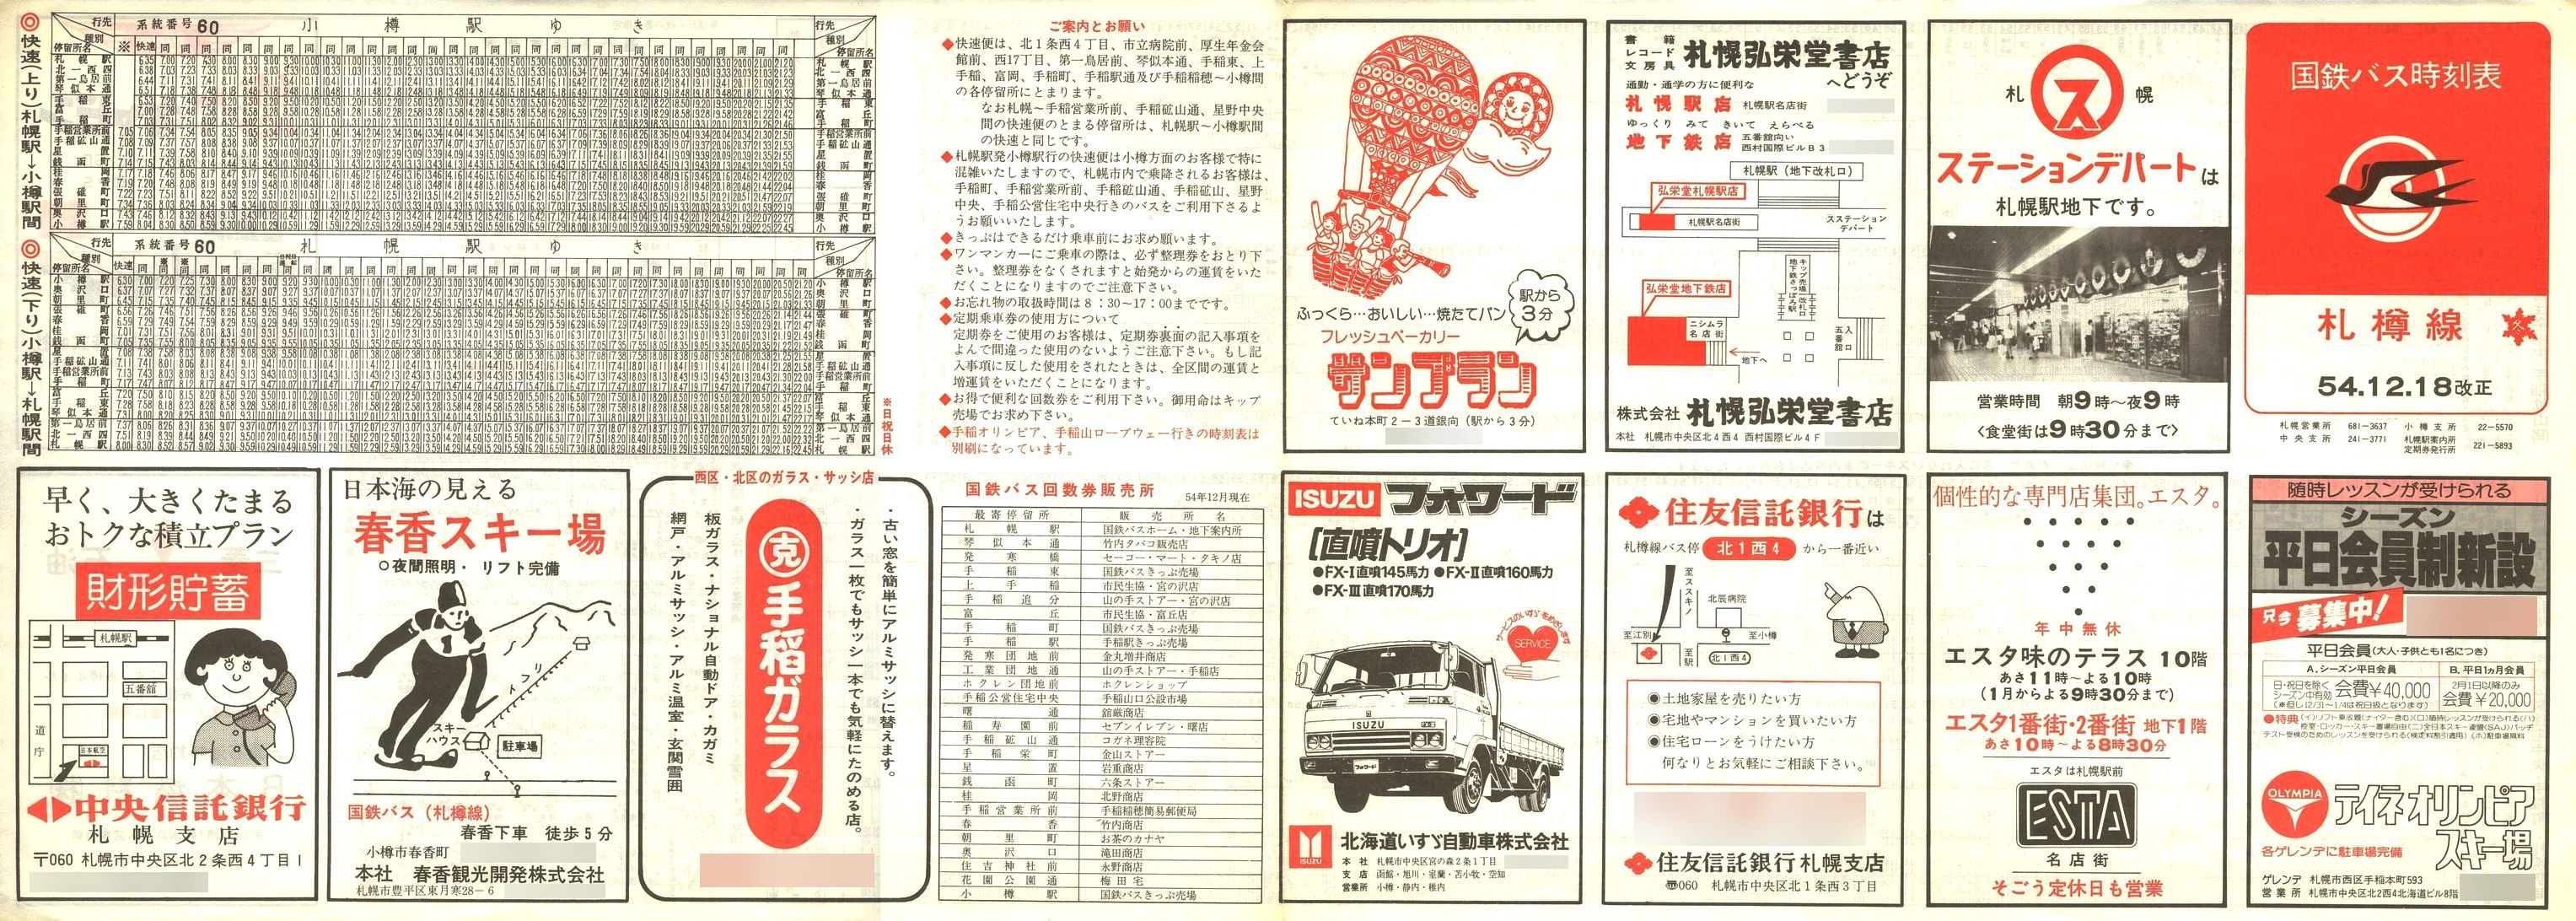 1979-12-18改正_国鉄バス_札樽線時刻表表面